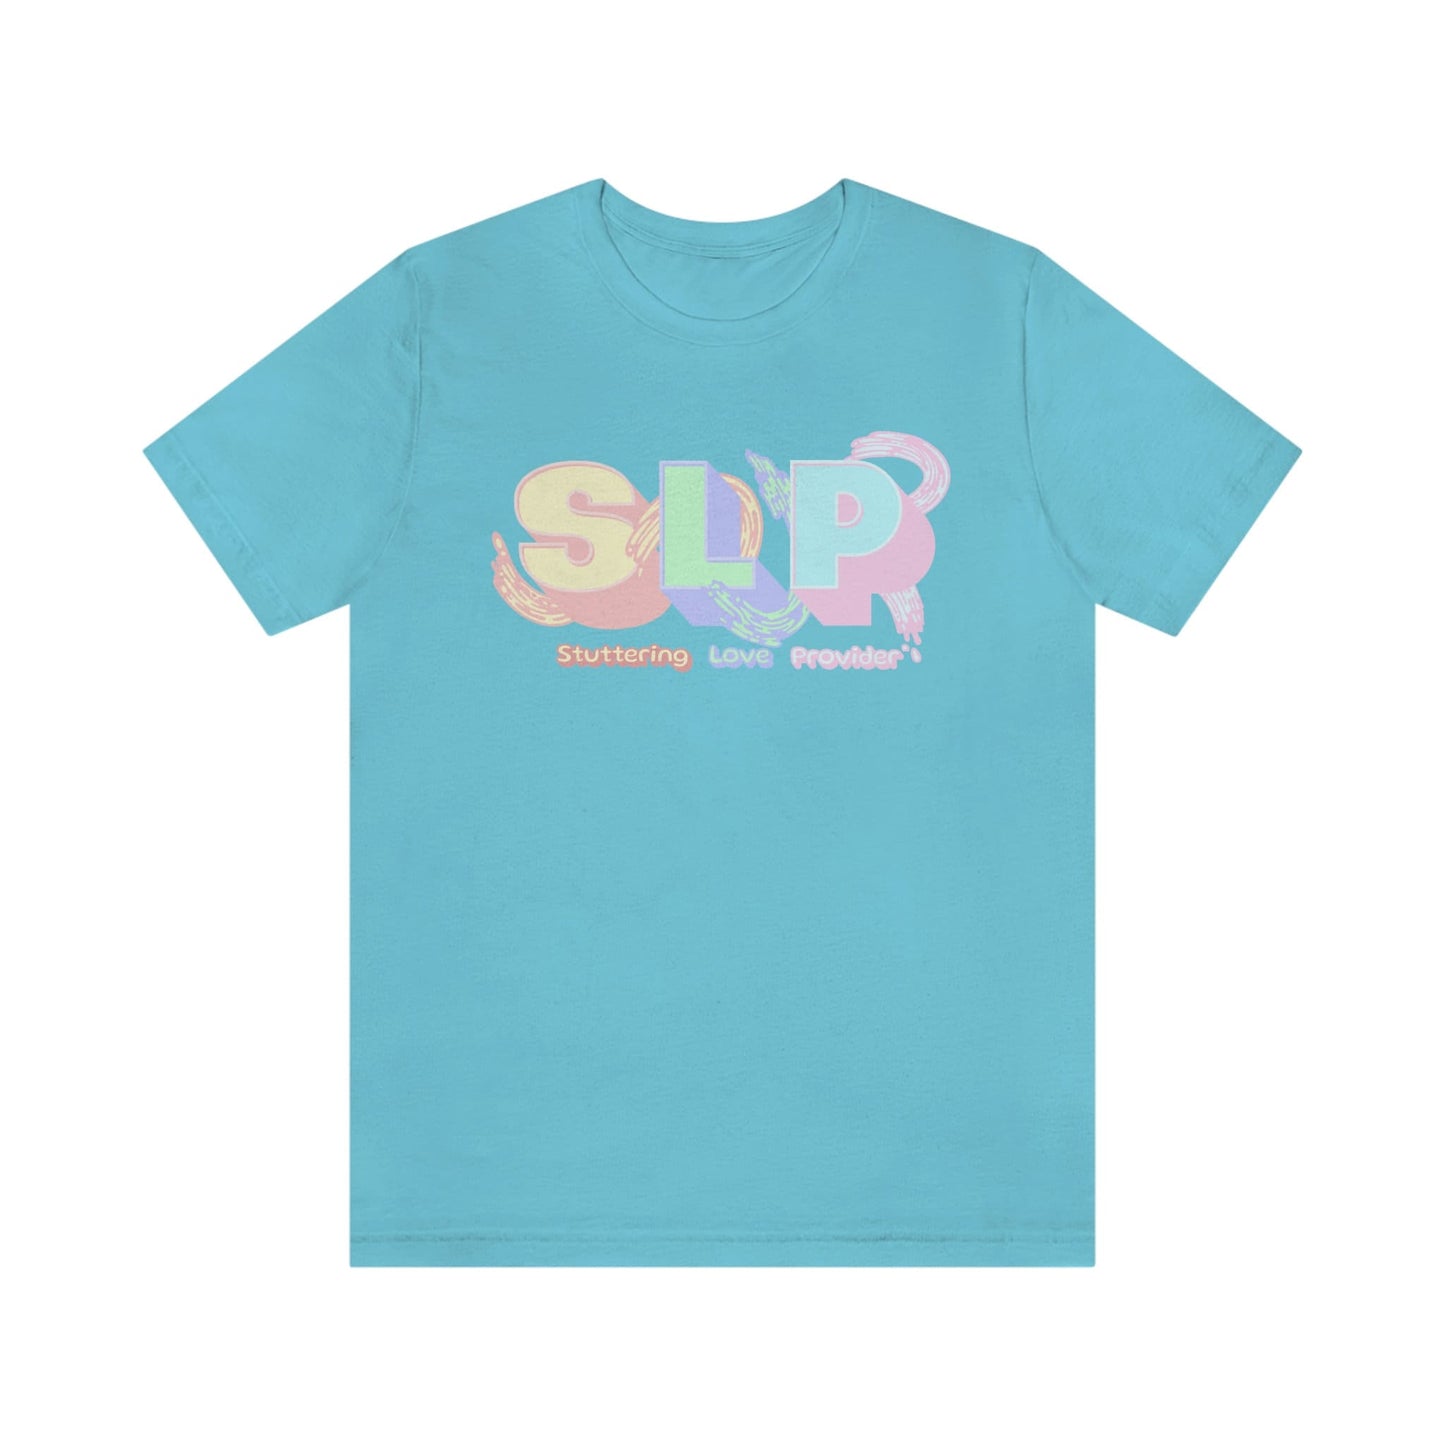 SLP Stuttering Love Provider Pastel T-shirt